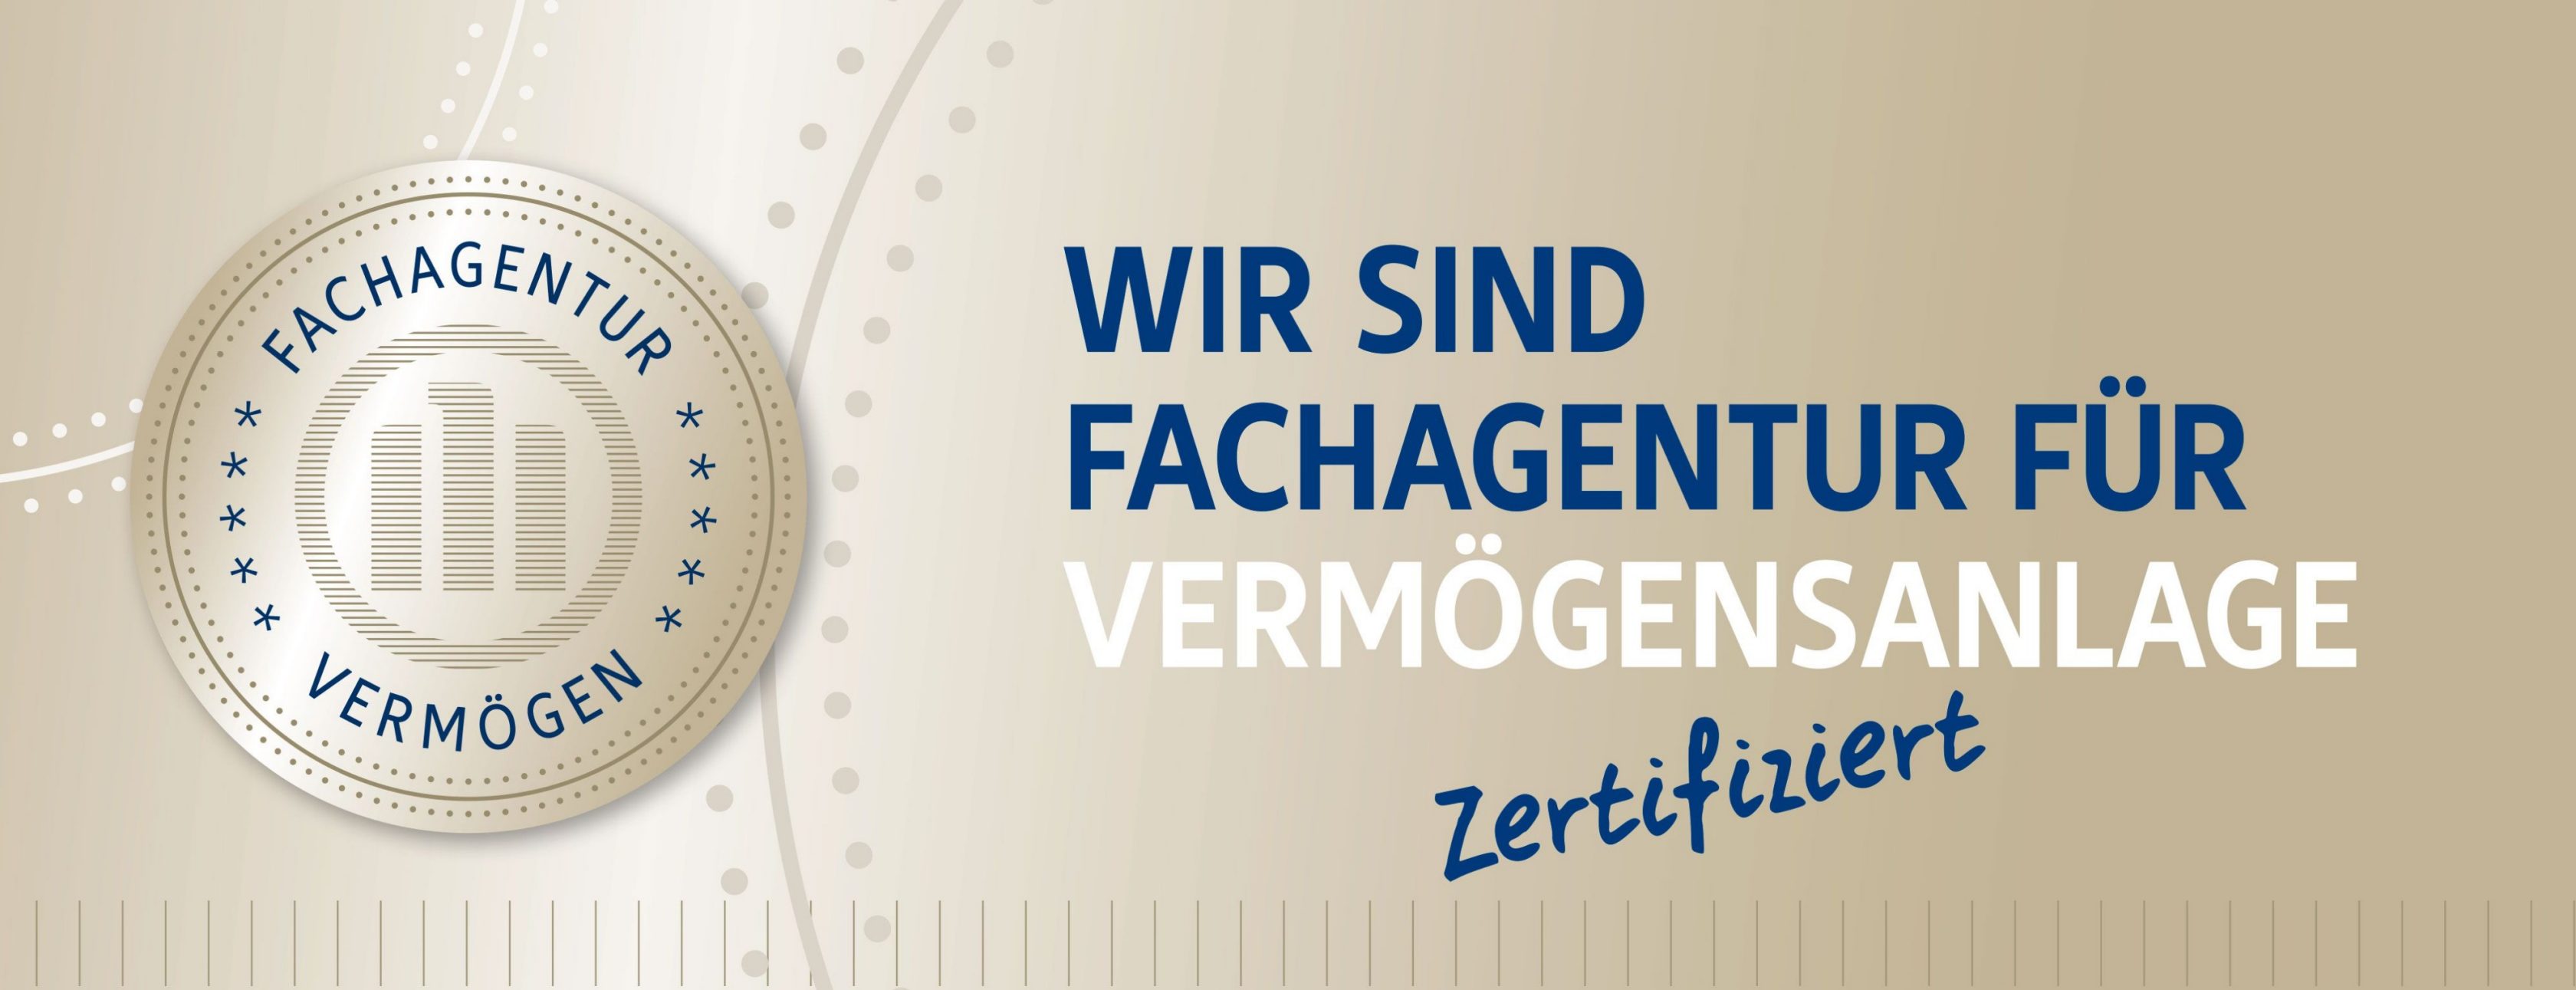 Allianz Versicherung Rouven Stieghahn Scheeßel - Titelbild